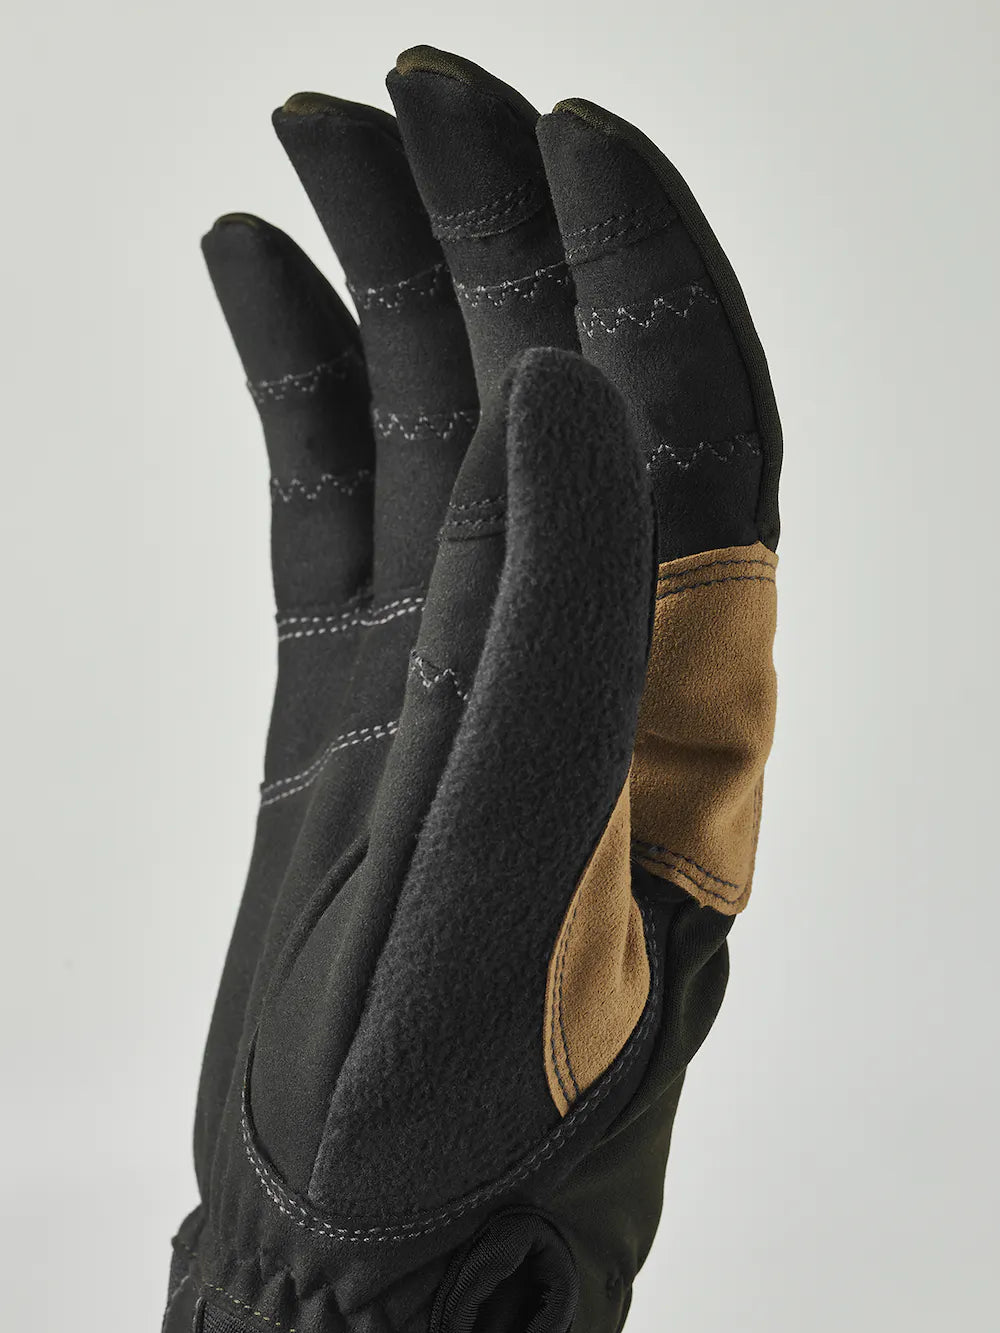 Ergo Grip Active Wool Terry - 5 finger (Size 6) - Dark forest / Black